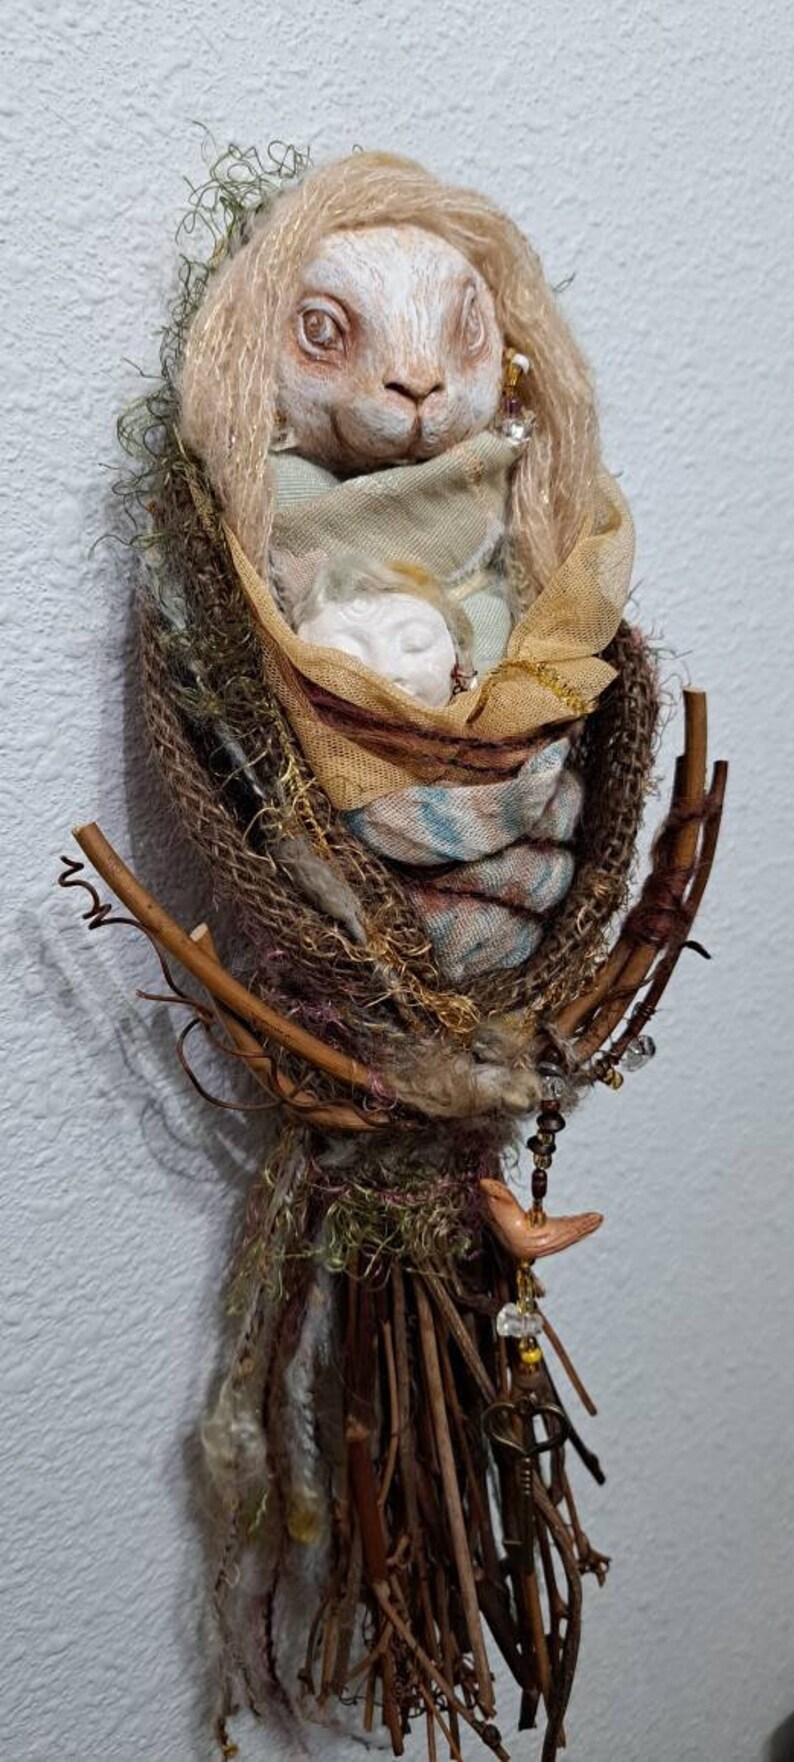 OOAK Art doll, Anthropomorphic Hare Spirit, Nature lover gift image 2